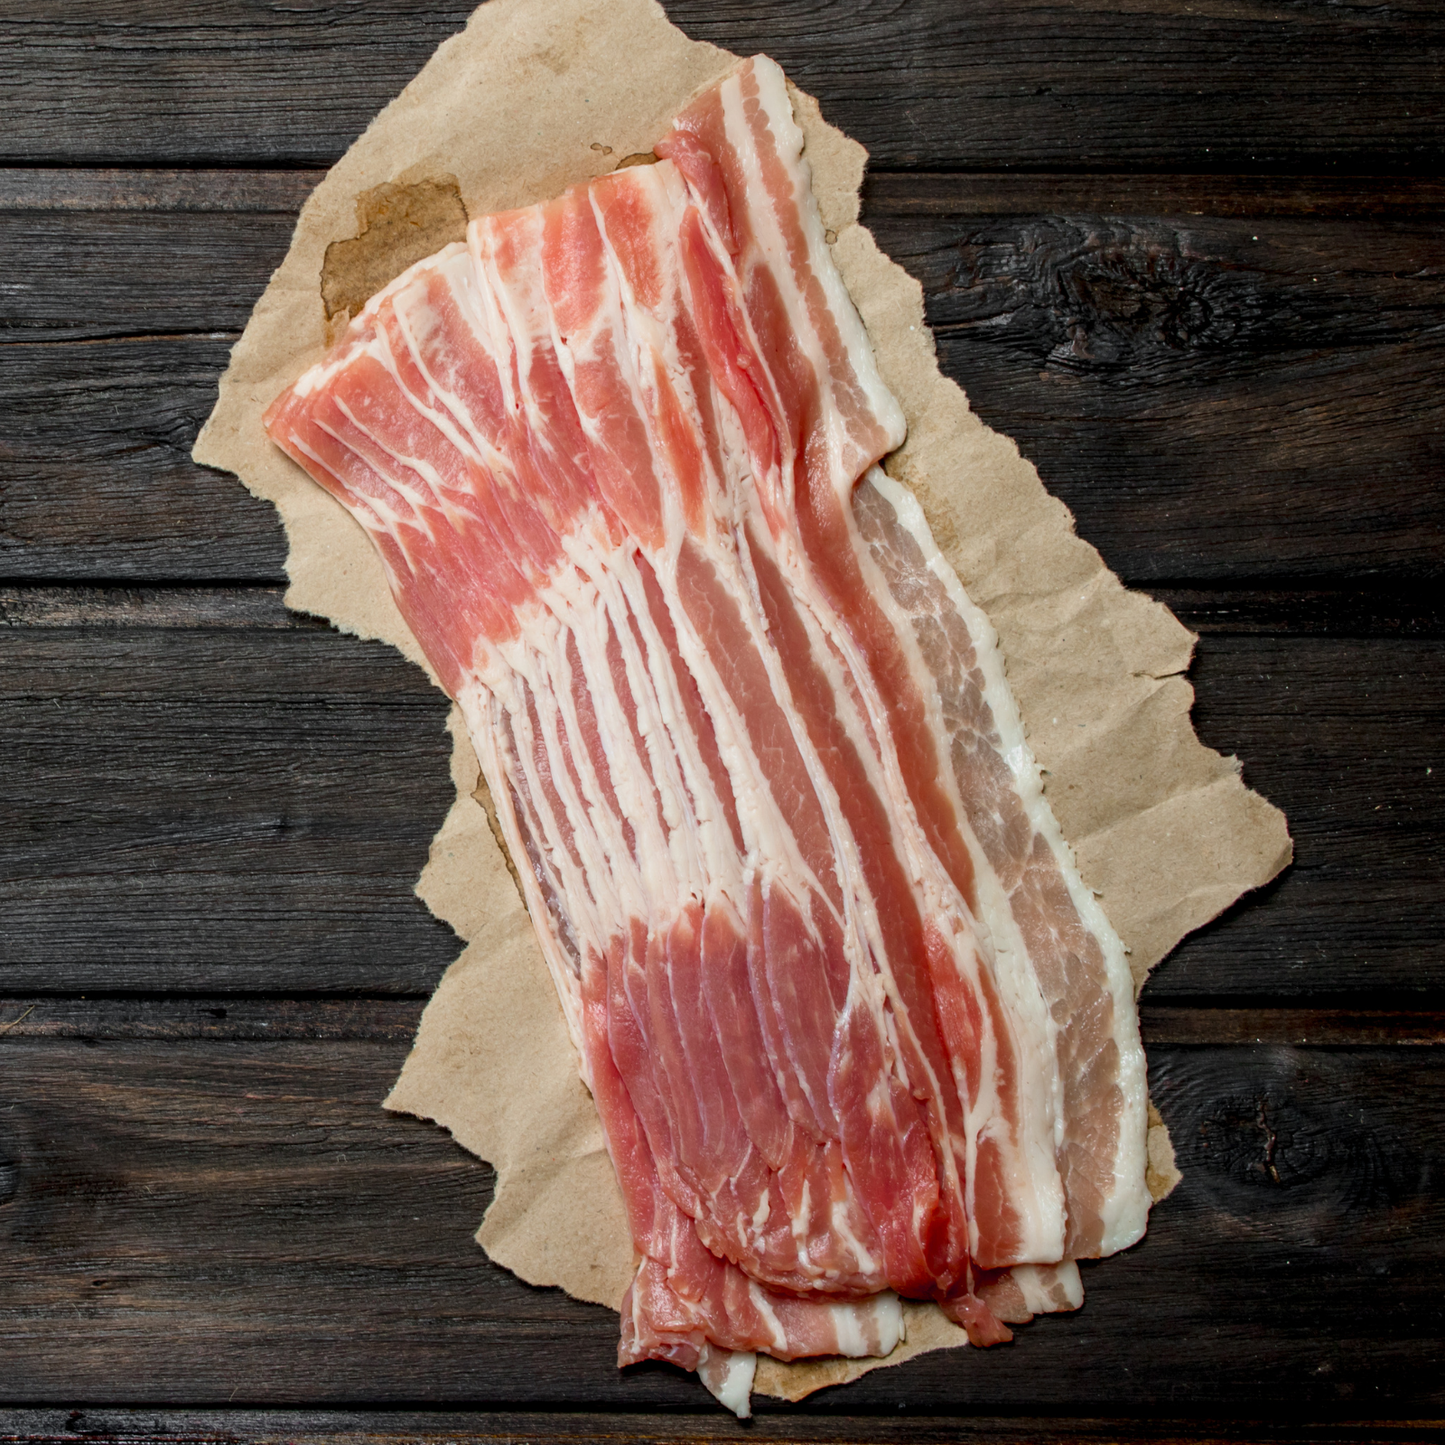 Streaky Bacon Pre-sliced 1kg - Frozen